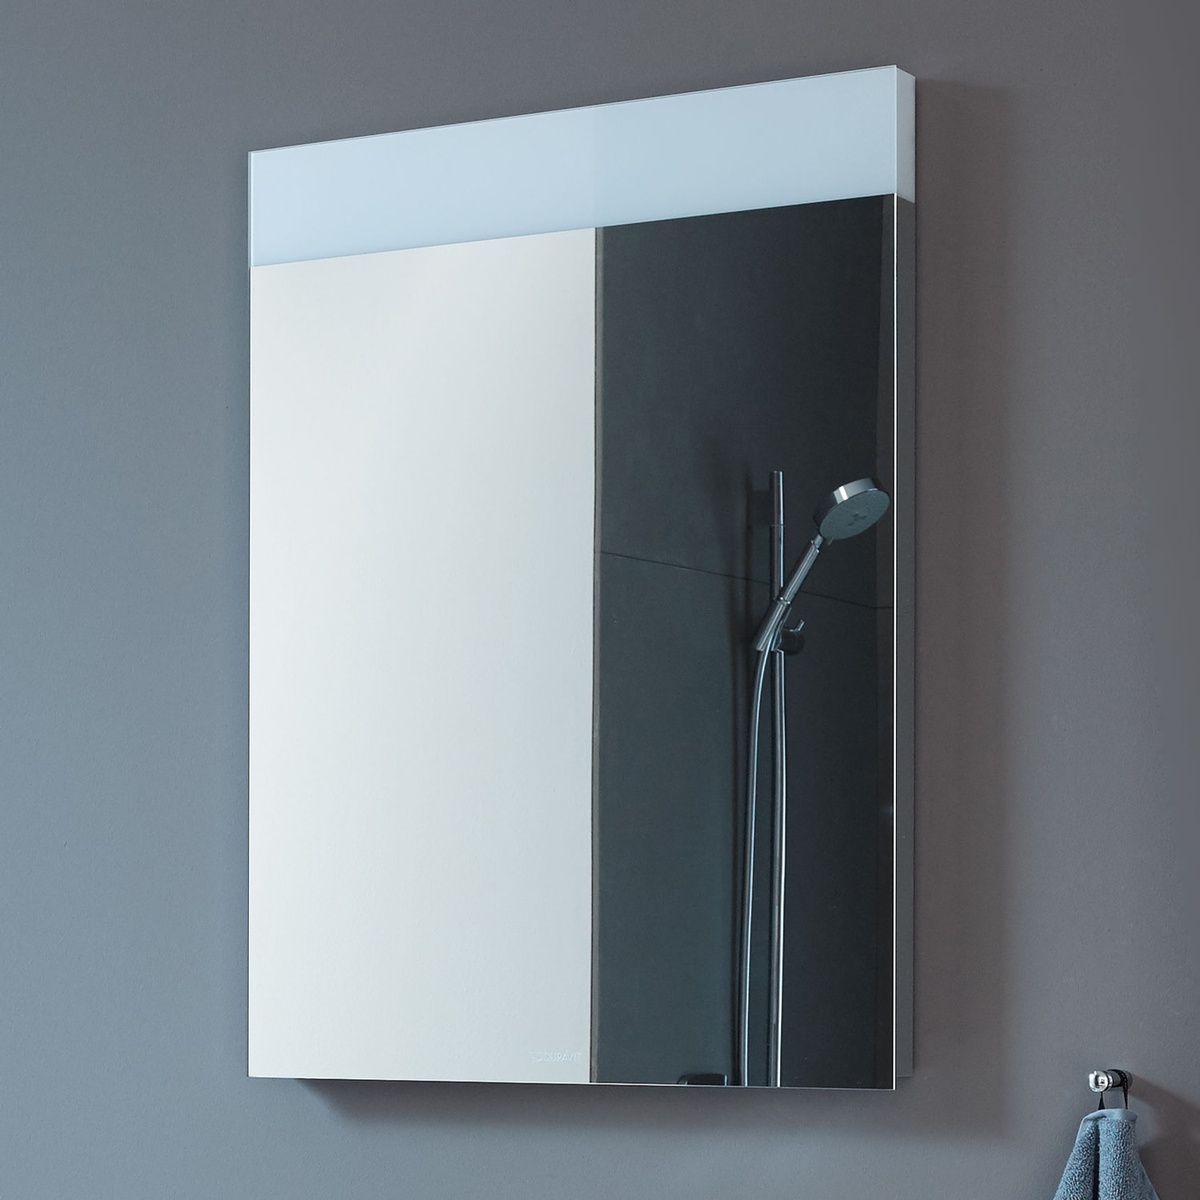 Зеркало в ванную DURAVIT Good Version 70x60см c подсветкой прямоугольное LM783500000